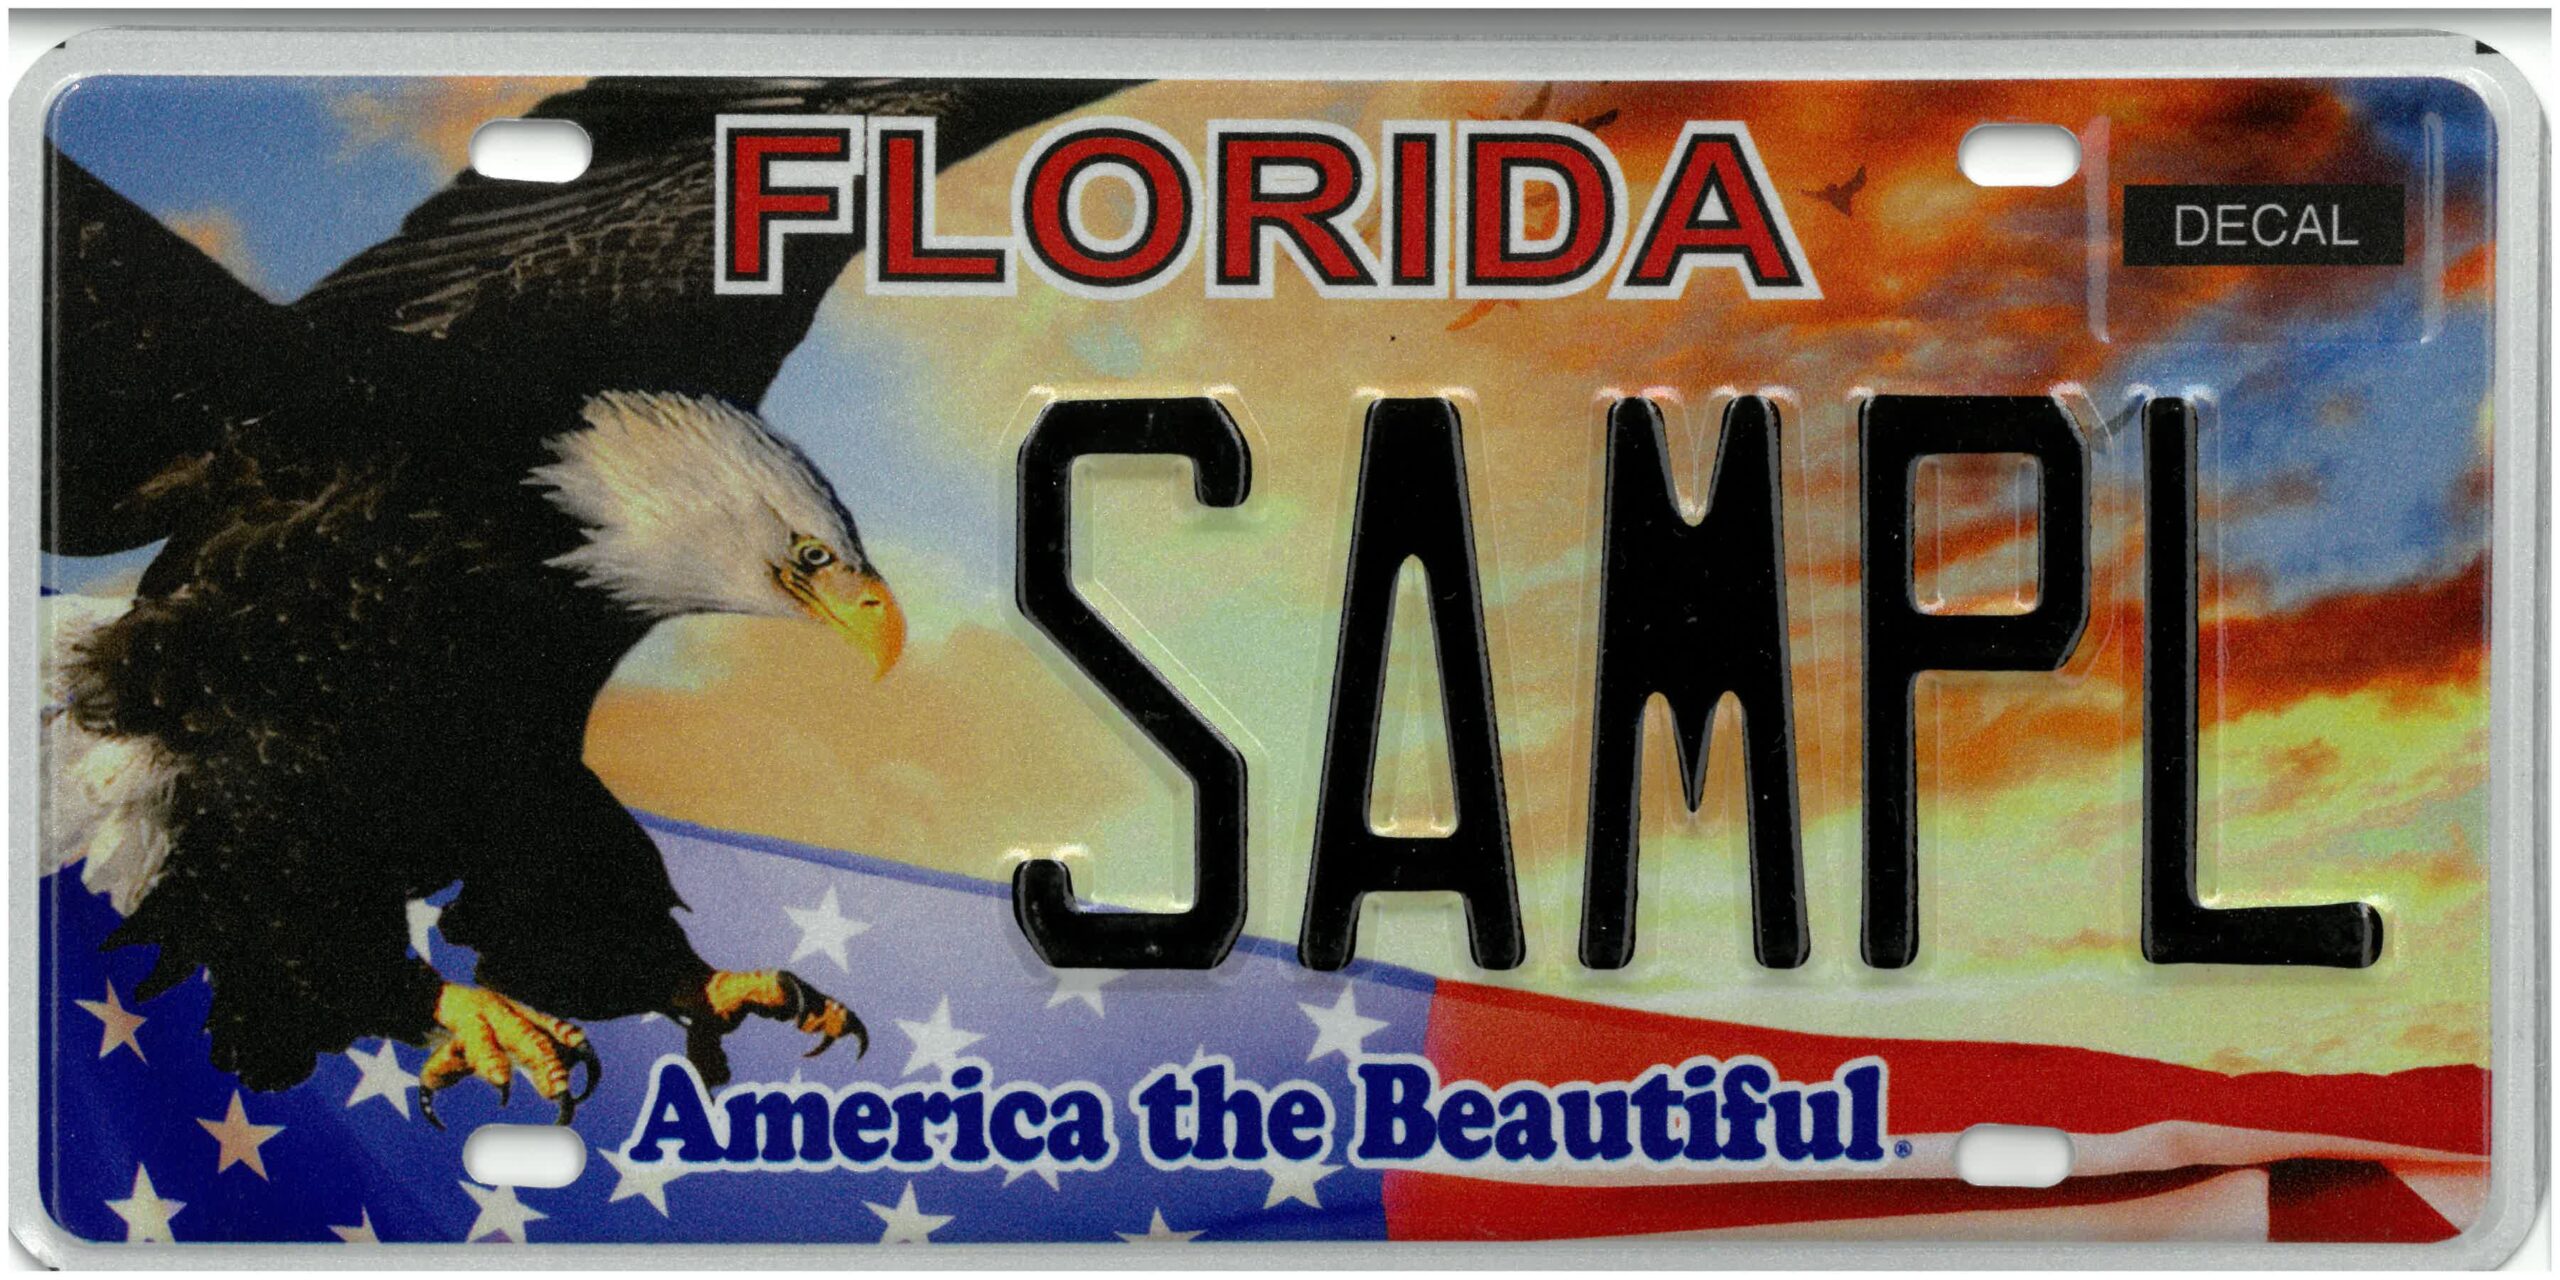 Obtén una placa especial en Florida: Descubre dónde y cómo obtenerla-Dónde puedo obtener una placa especial en Florida